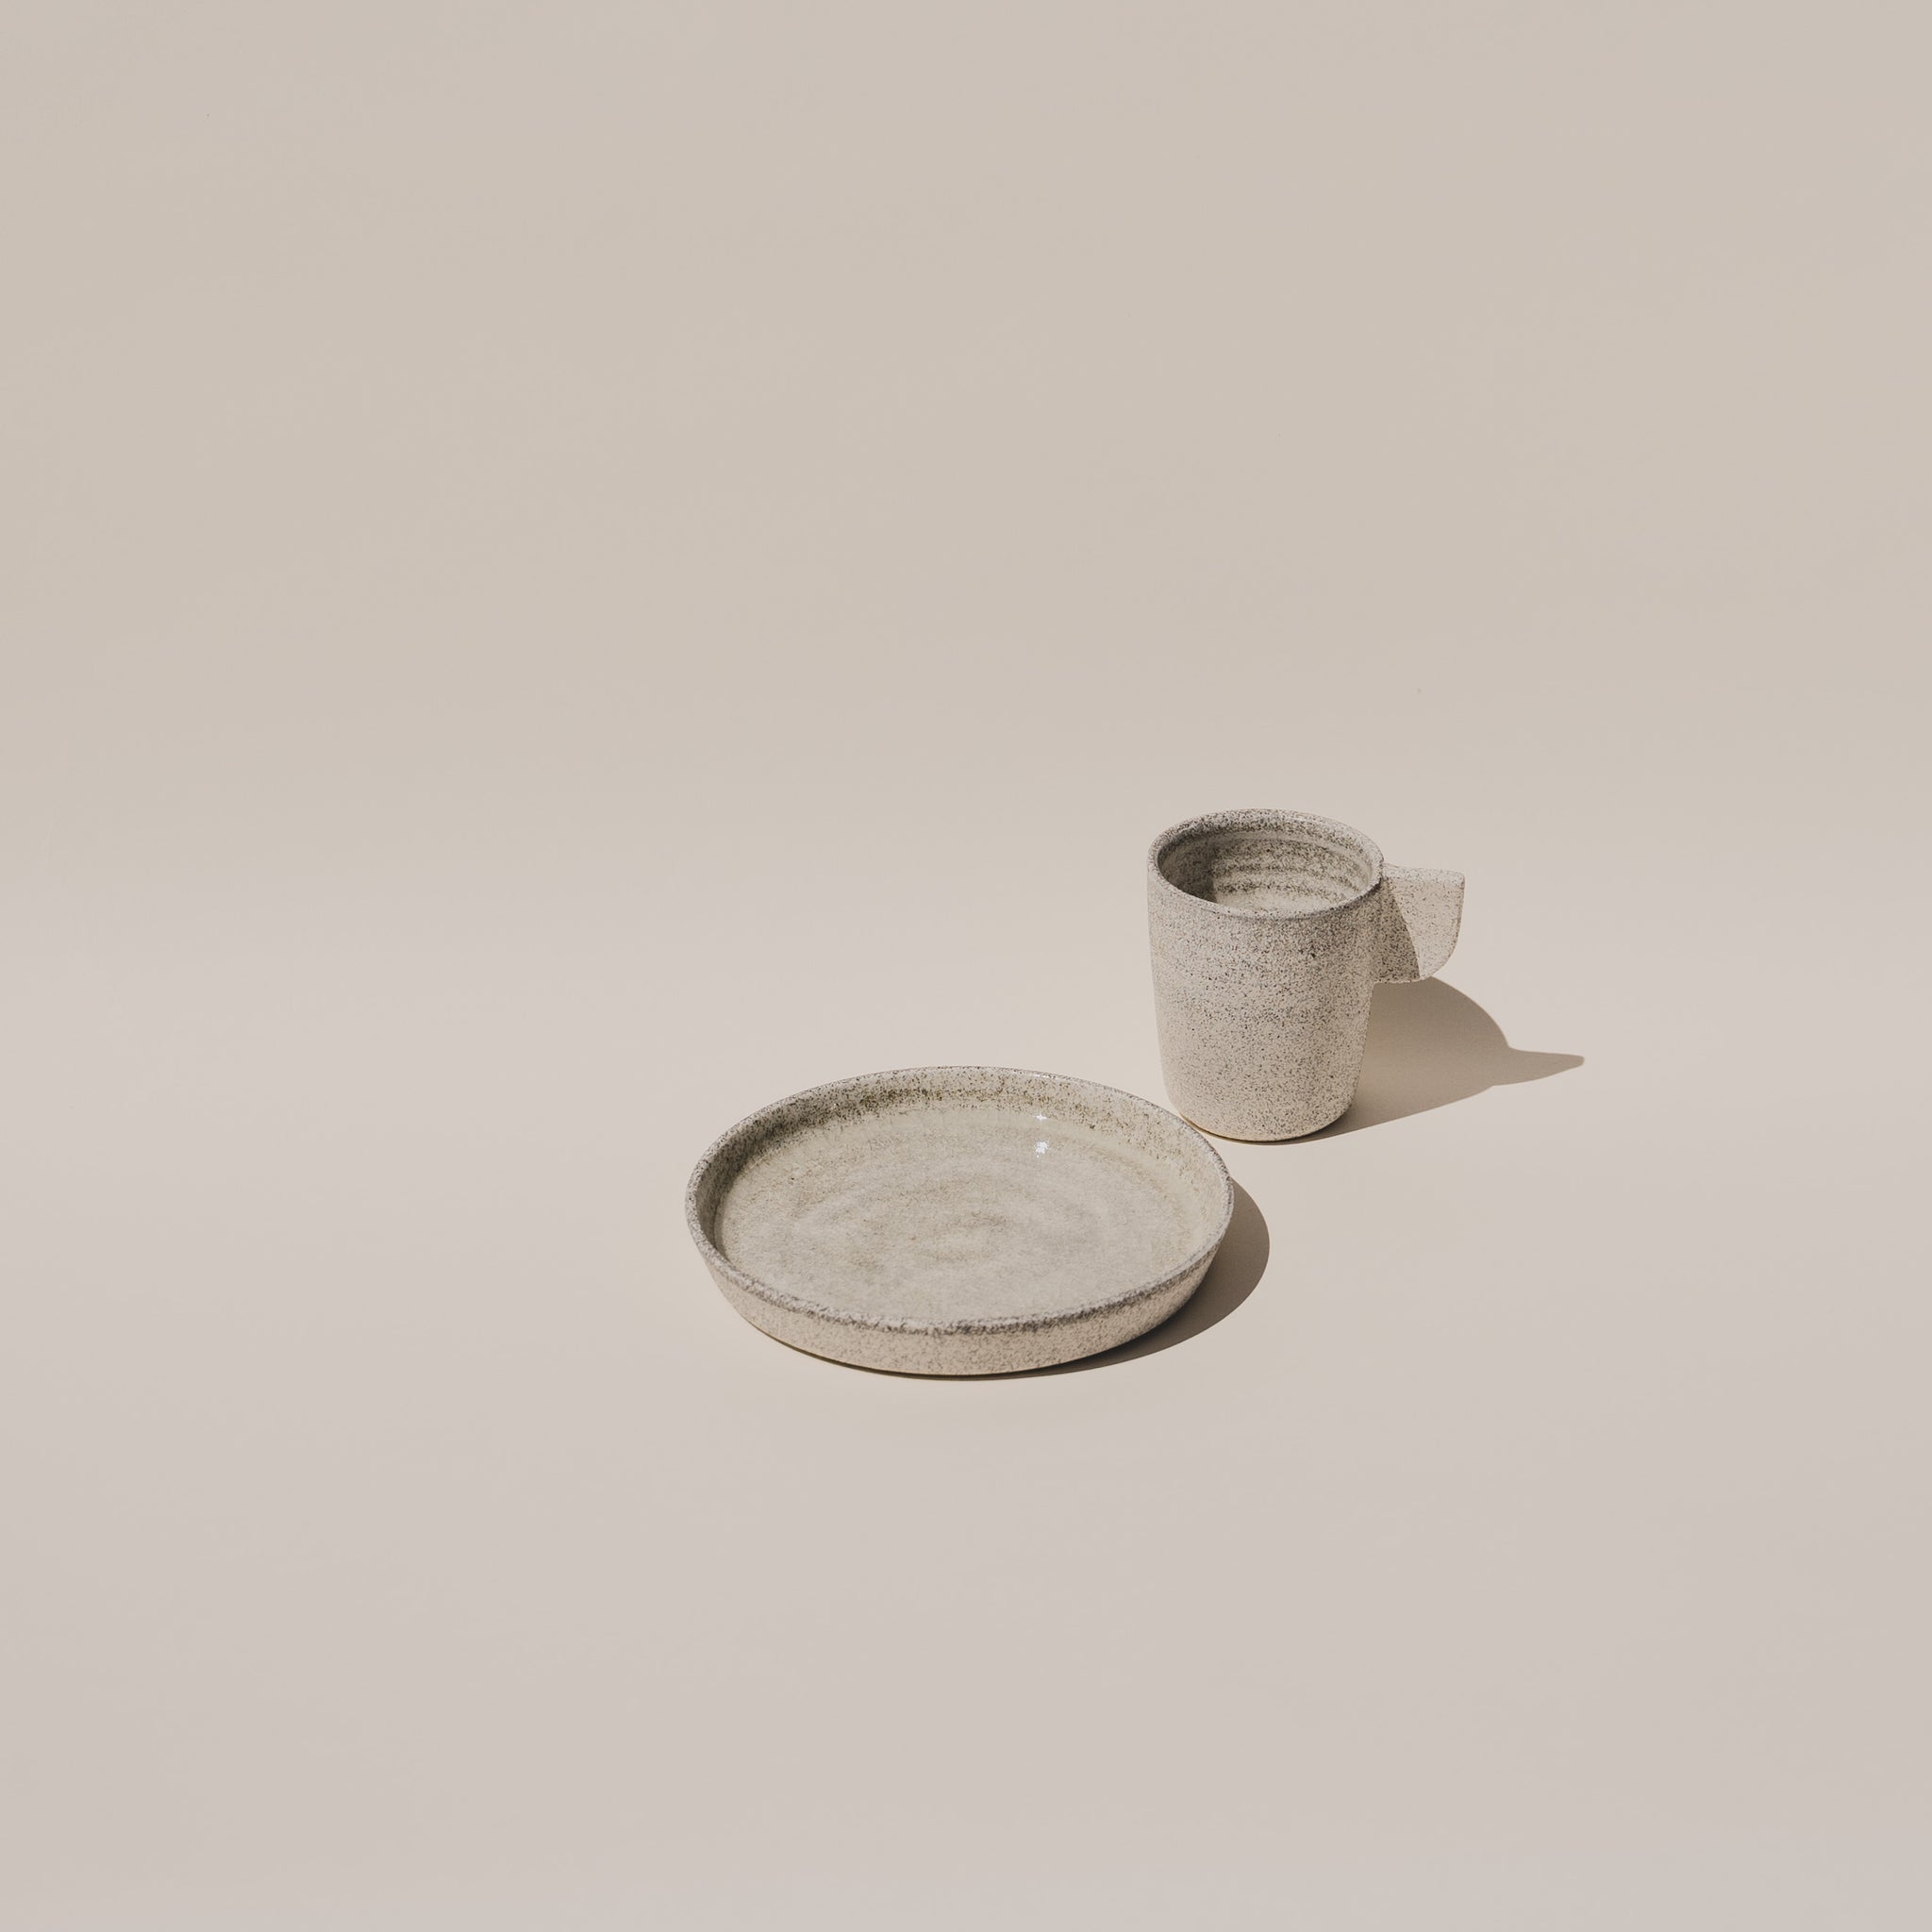 Ceramic Plate and ceramic mug in speckled grey